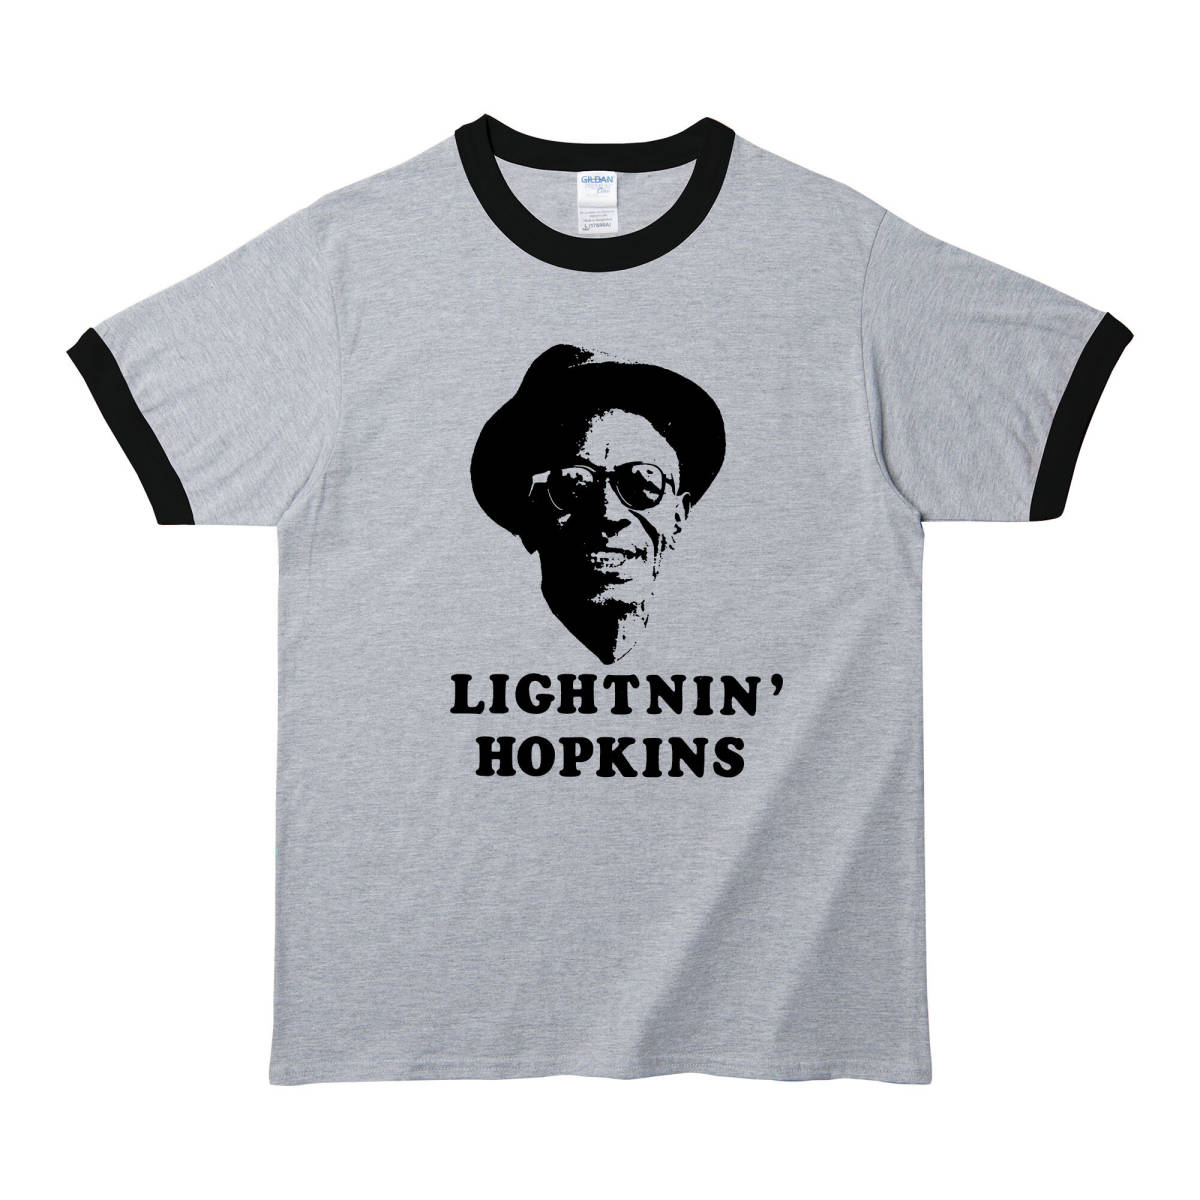 【XSサイズ Tシャツ】Lightnin' hopkins ライトニンホプキンス BLUES 甲本ヒロト LP CD レコード 7inch ロバートクラム_画像1